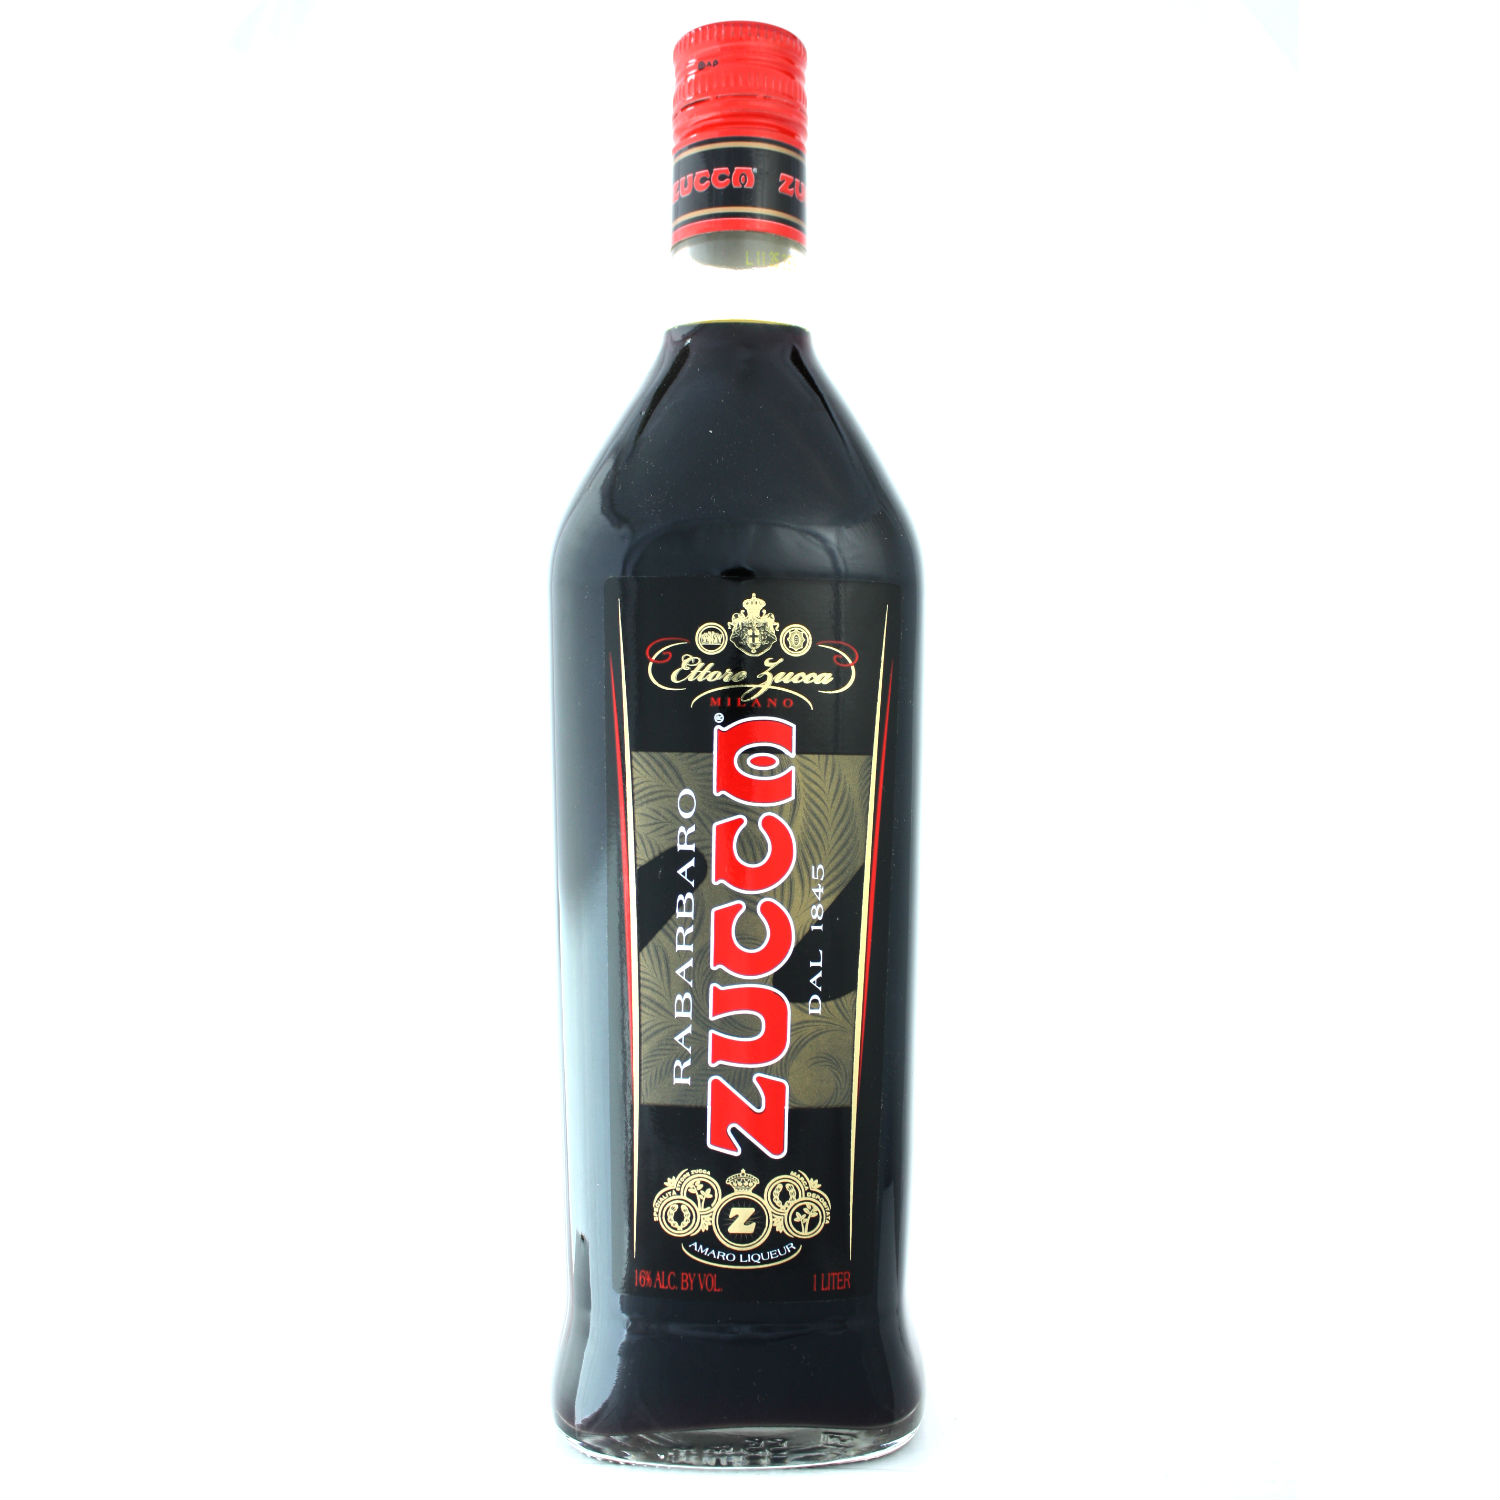 Rabarbaro - Zucca Amaro (750ml)